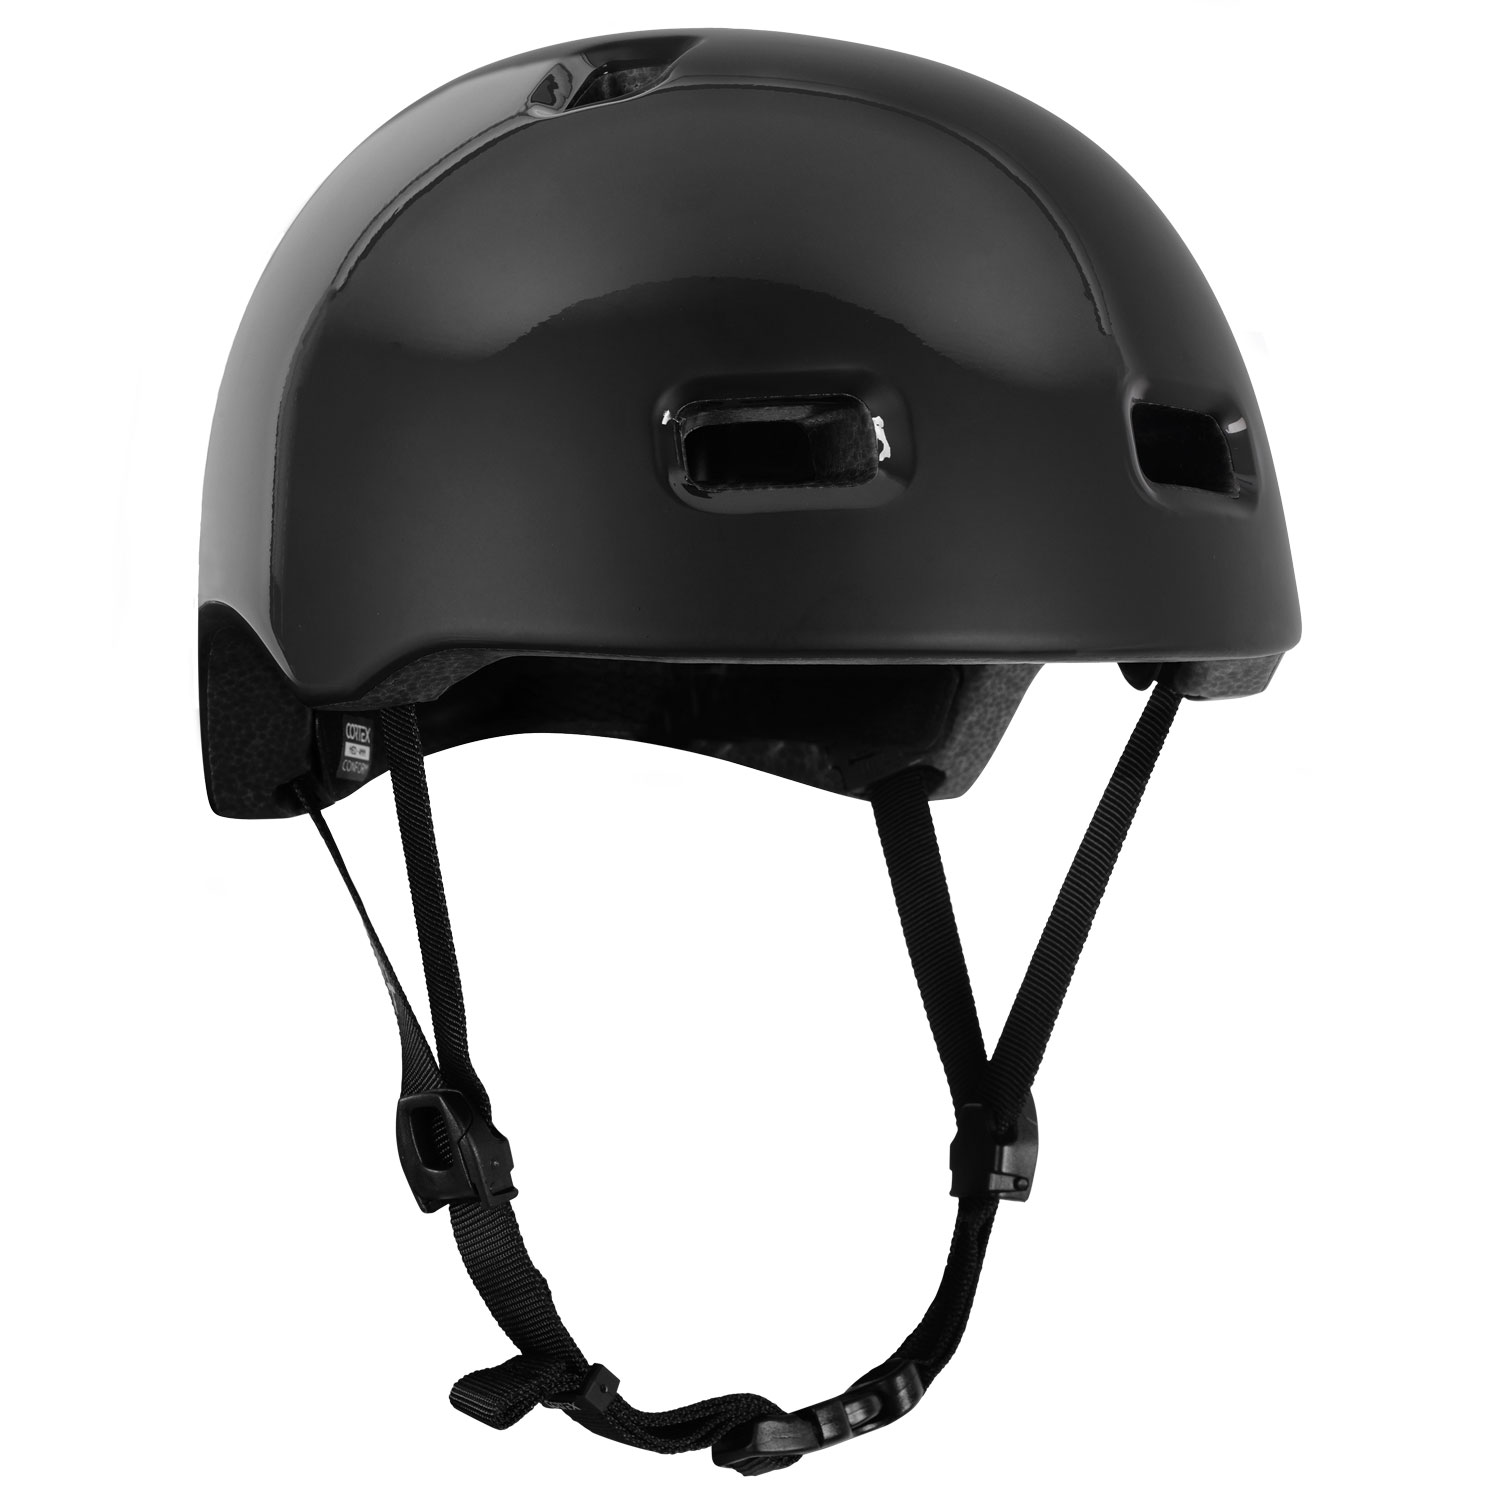 Cortex Multi Sport Helm glanz Schwarz in S, M, L